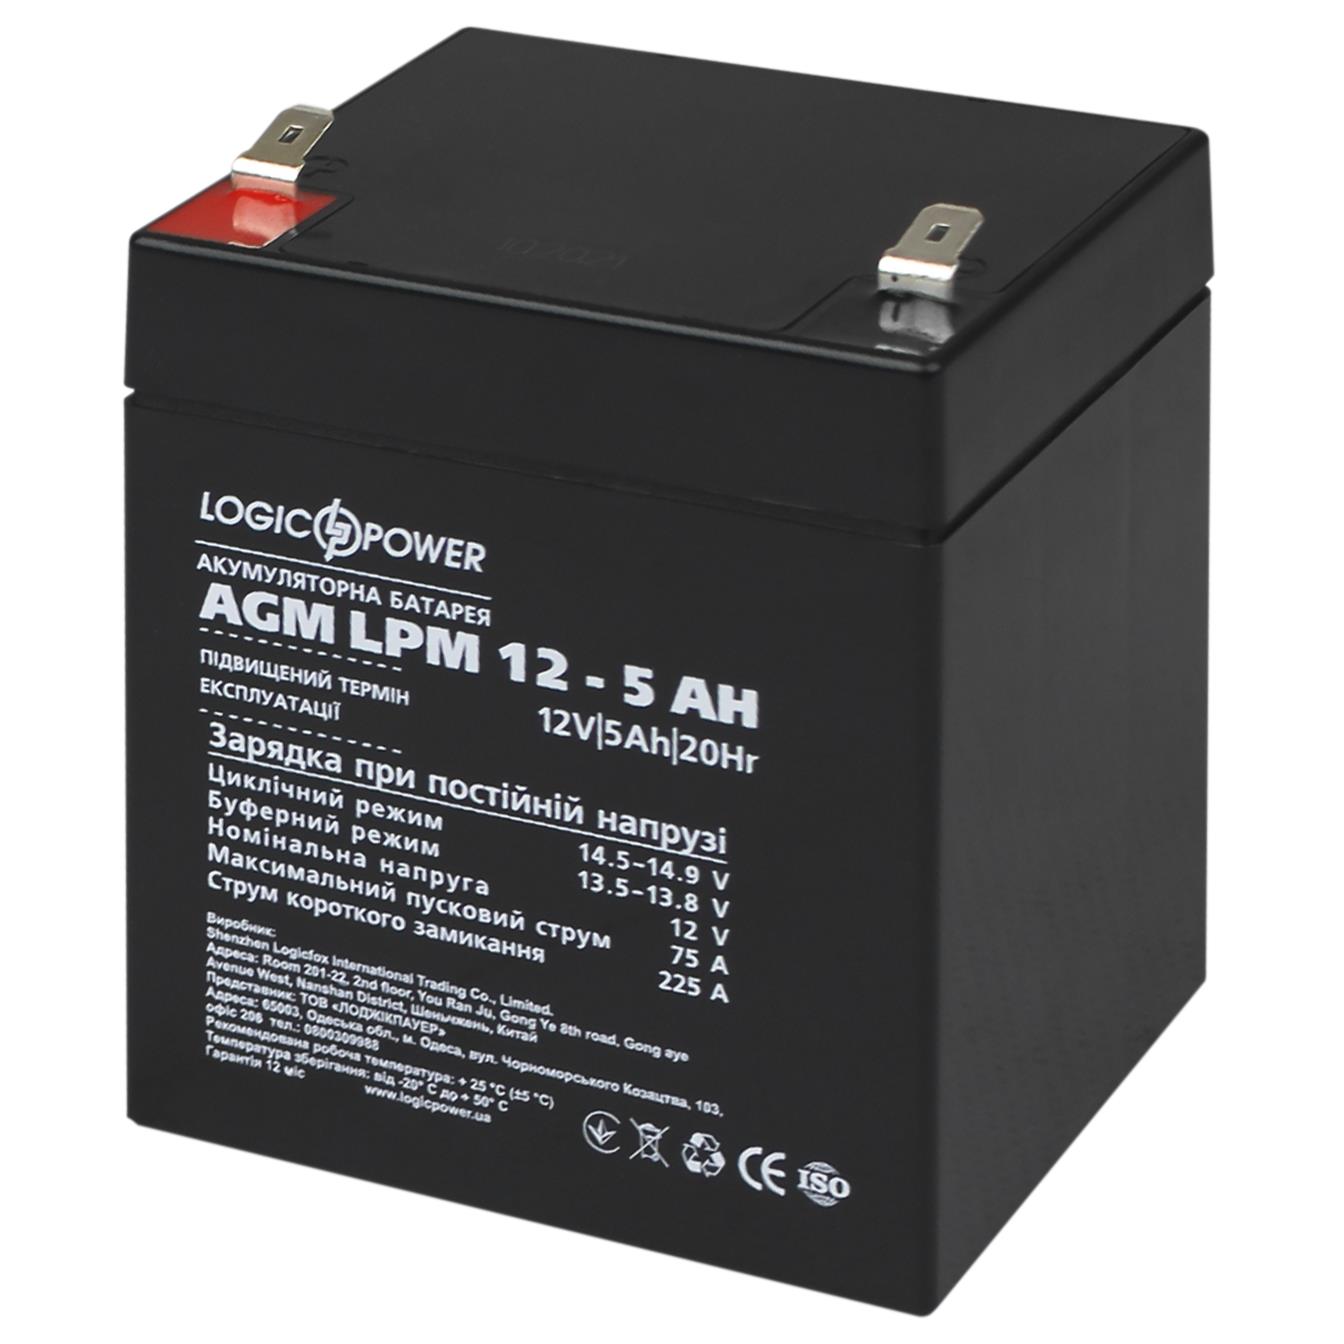 Инструкция аккумулятор свинцово-кислотный LogicPower AGM LPM 12V - 5 Ah (3861)